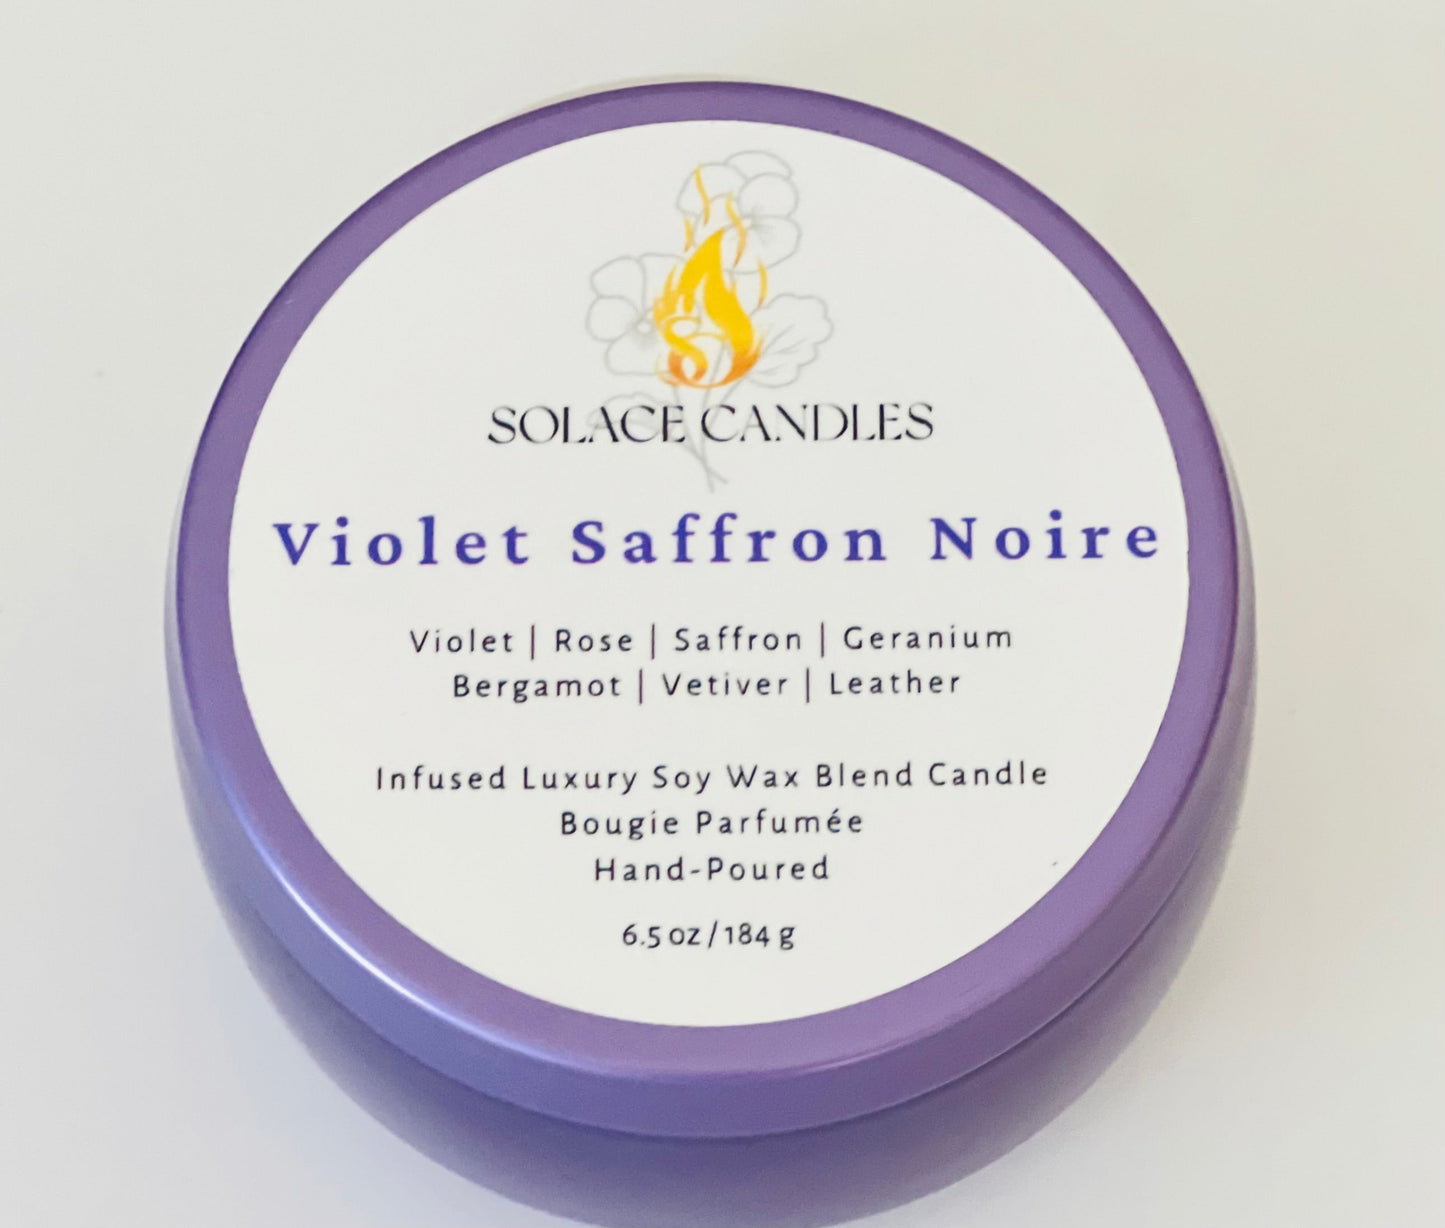 Violet Saffron Noire